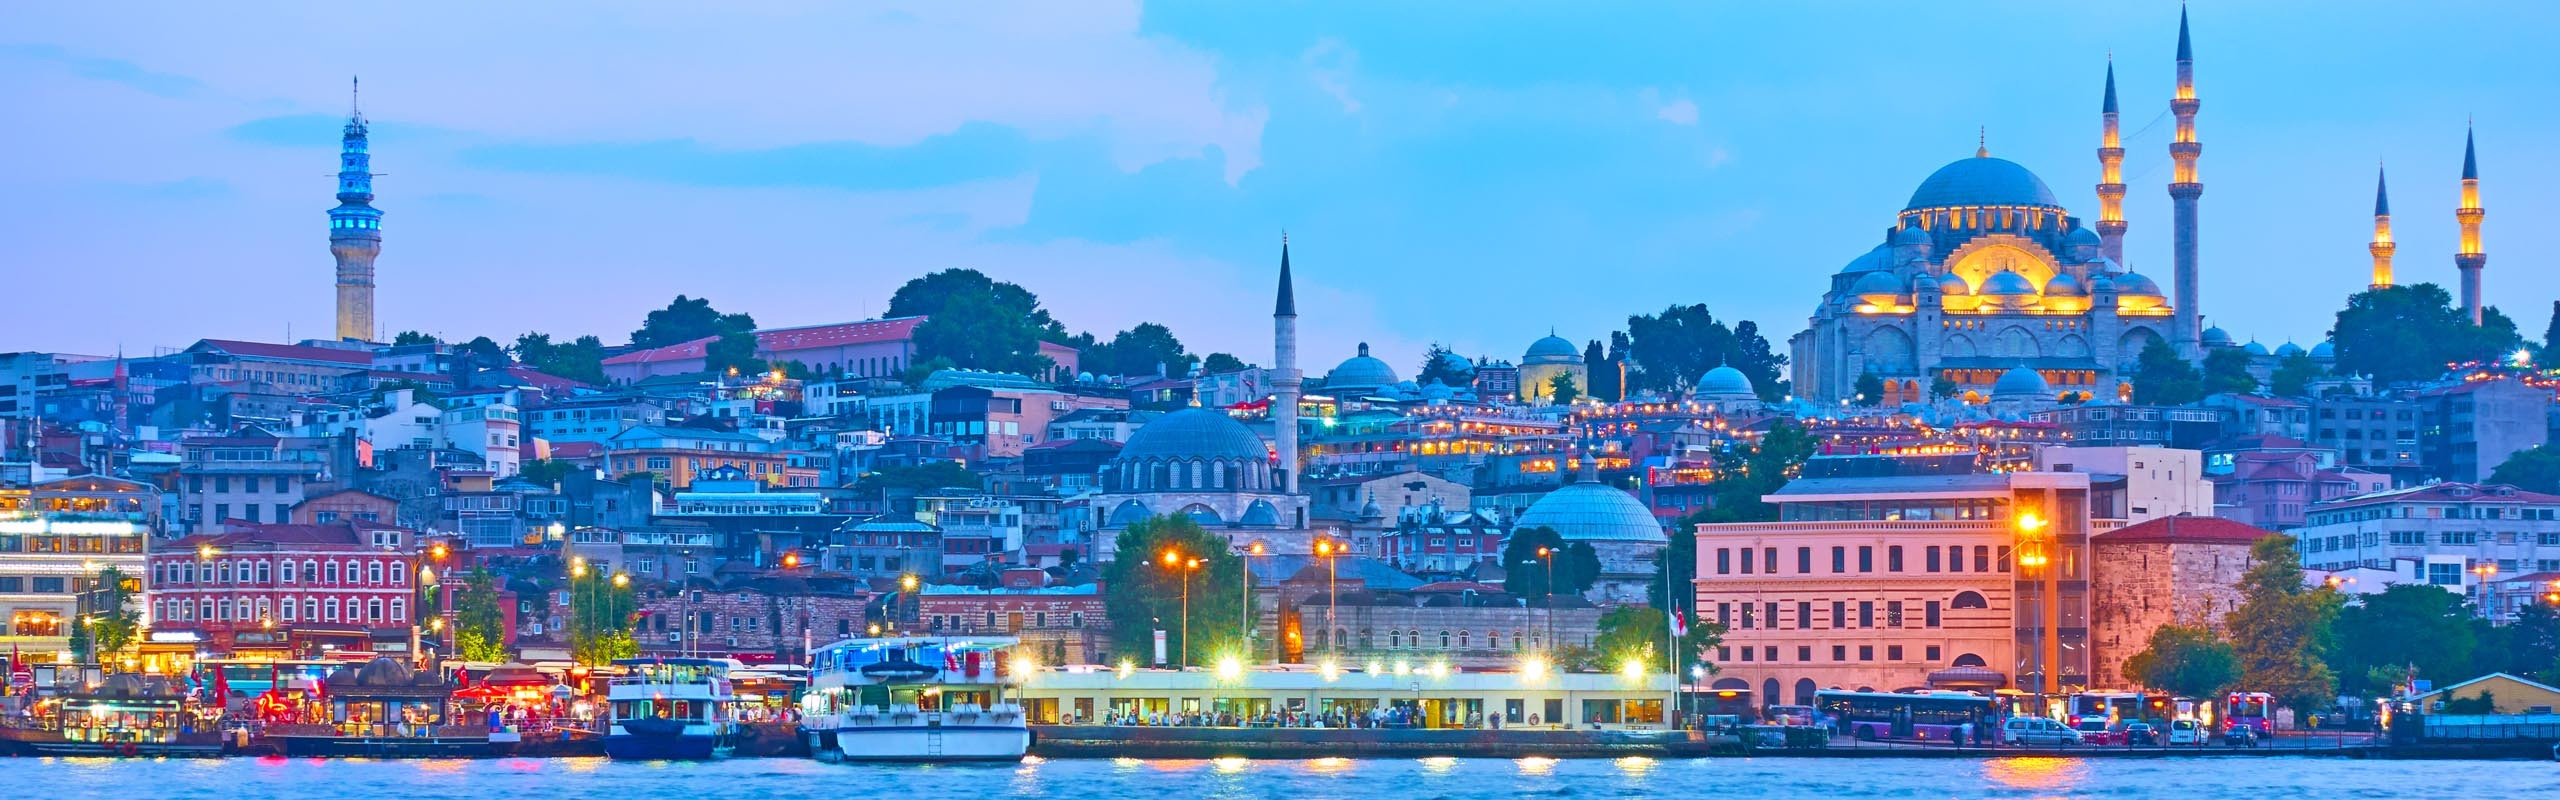 10-Day Turkey Honeymoon Tour (Istanbul to Cappadocia)